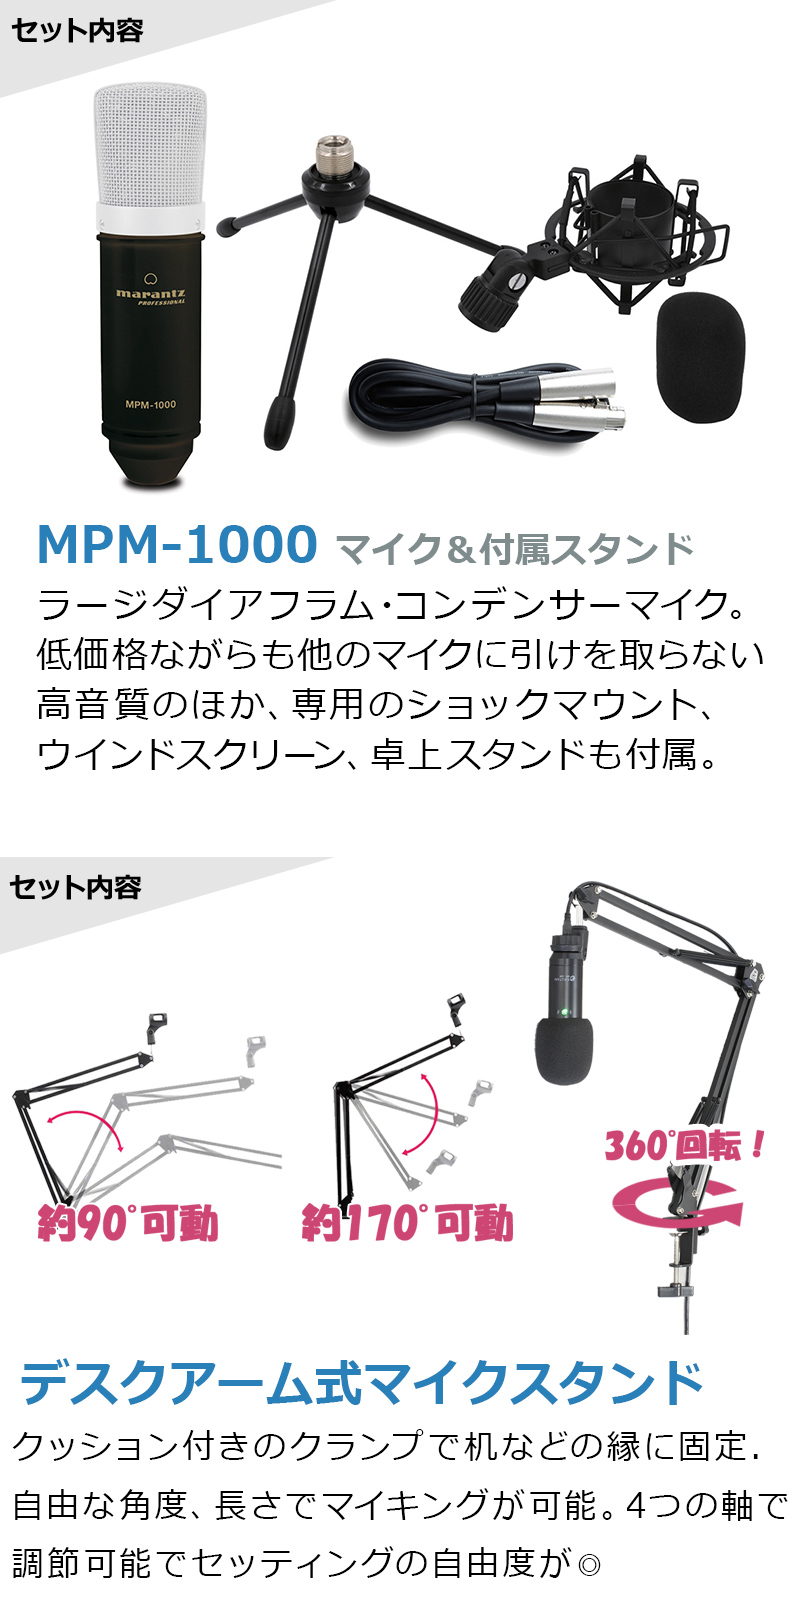 YAMAHA Yamaha AG03MK2 высококачественный звук распределение комплект arm подставка поп-фильтр 4 высшее Aux кабель конденсаторный микрофон выгода комплект 